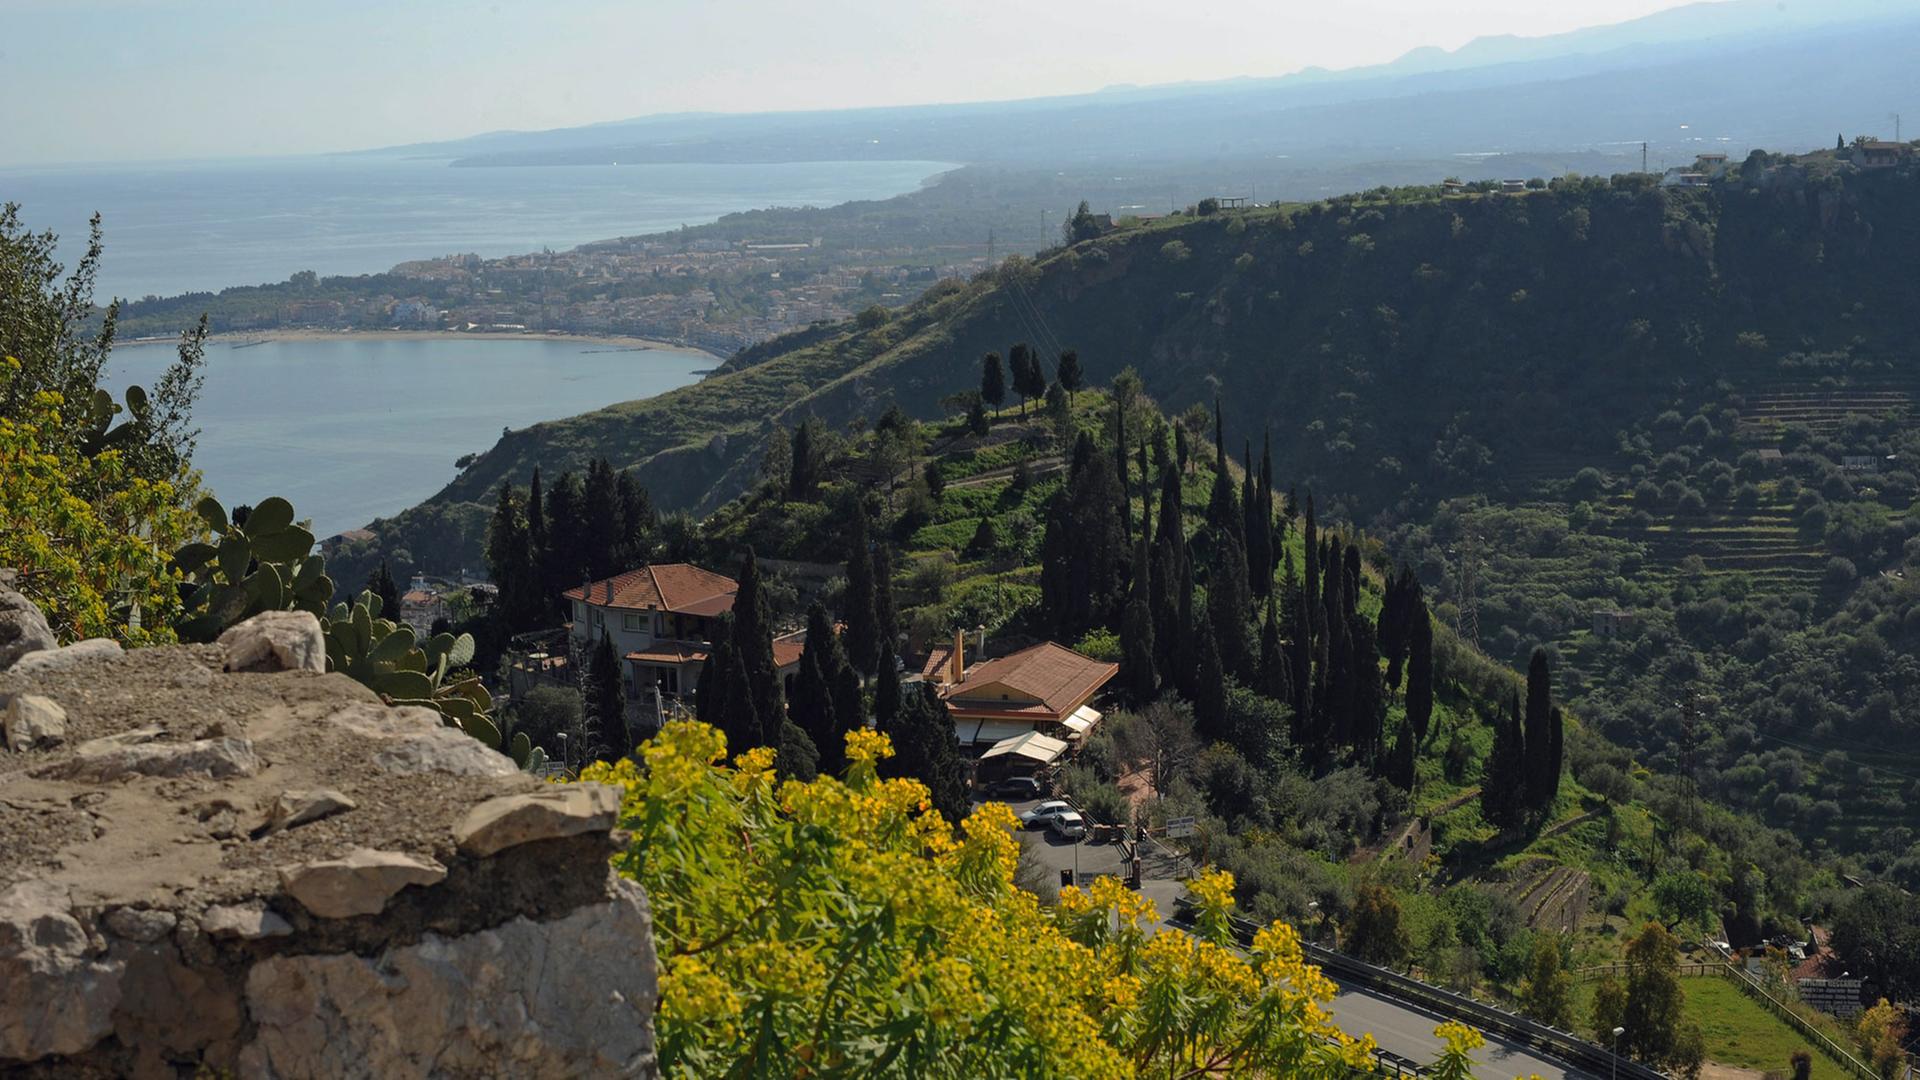 Blick von Taormina - einem malerischen Ort an der Ostküste Siziliens - auf eine Meeresbucht.